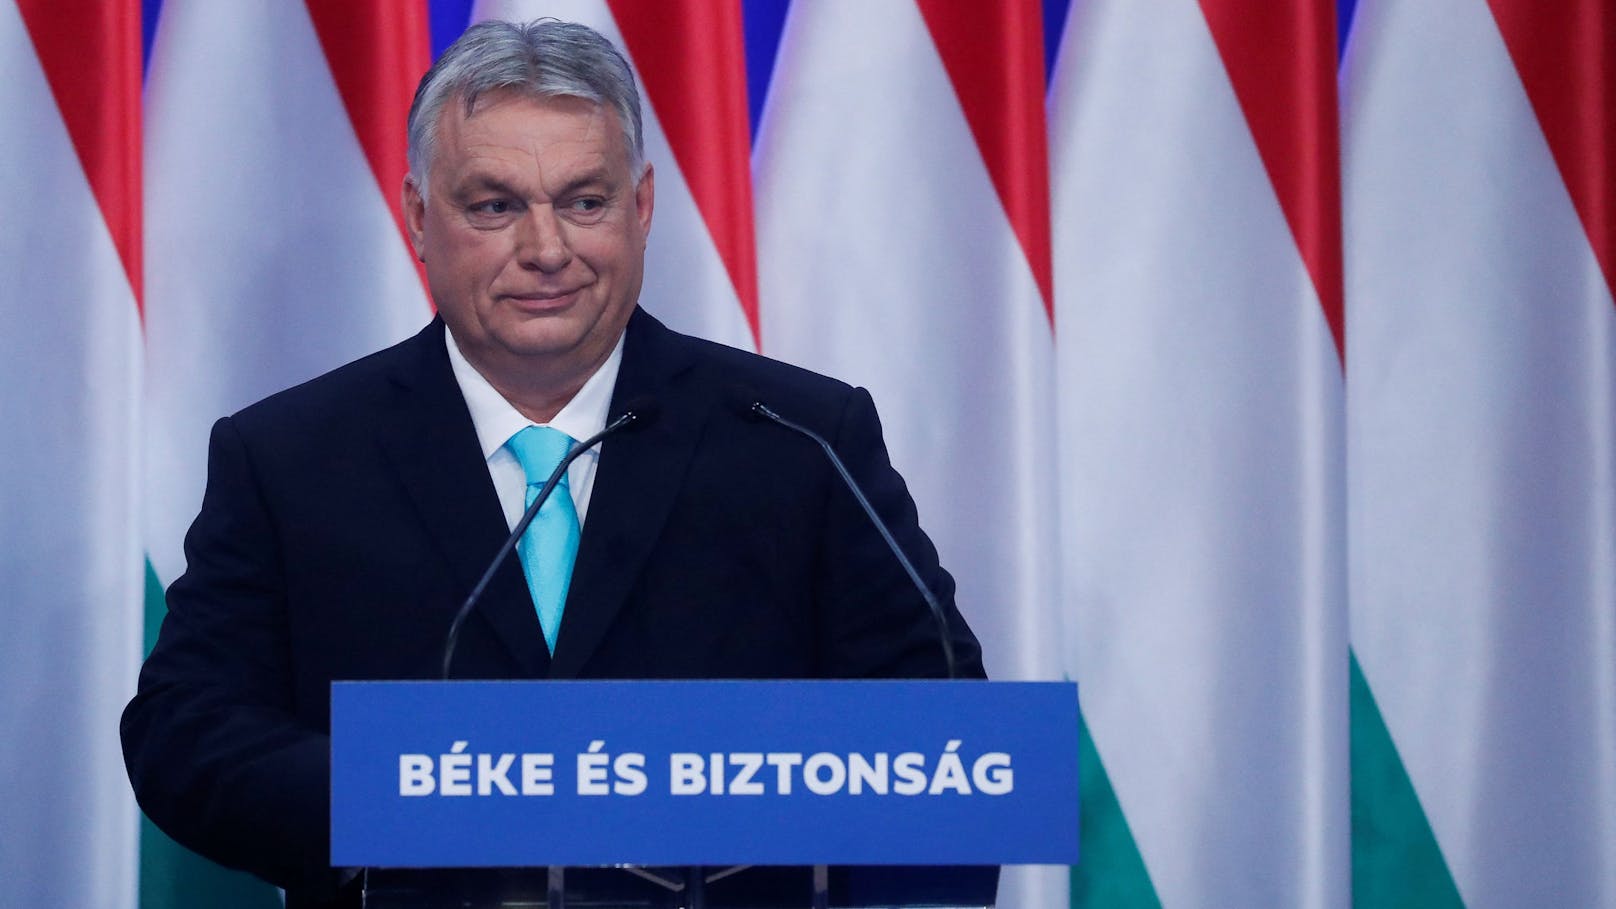 Gemäß einer Verordnung, welche die ungarische Regierung von Viktor Orban erlassen hat, werden inhaftierte Schlepper aus dem Ausland freigelassen, wenn sie Ungarn innerhalb von 72 Stunden verlassen.